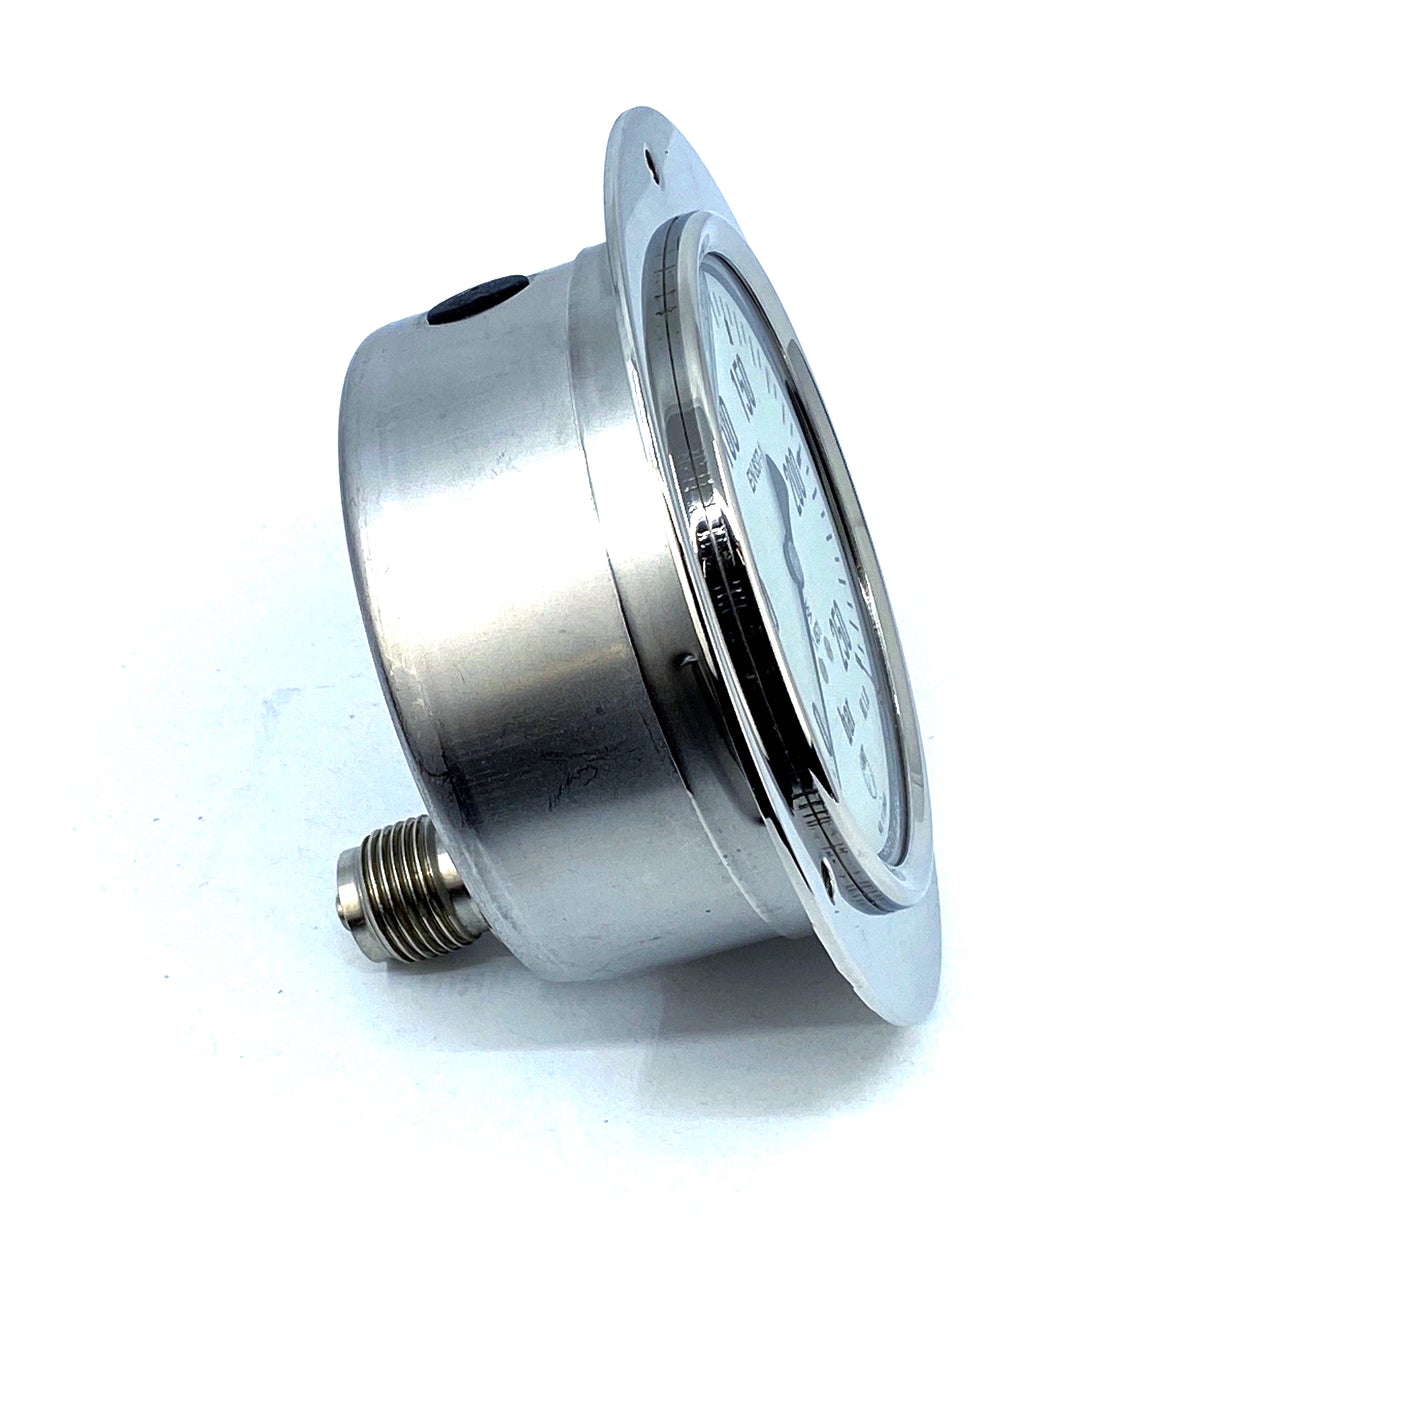 IMT 2329.084.012 manometer pressure gauge 0-250bar G1/2A 